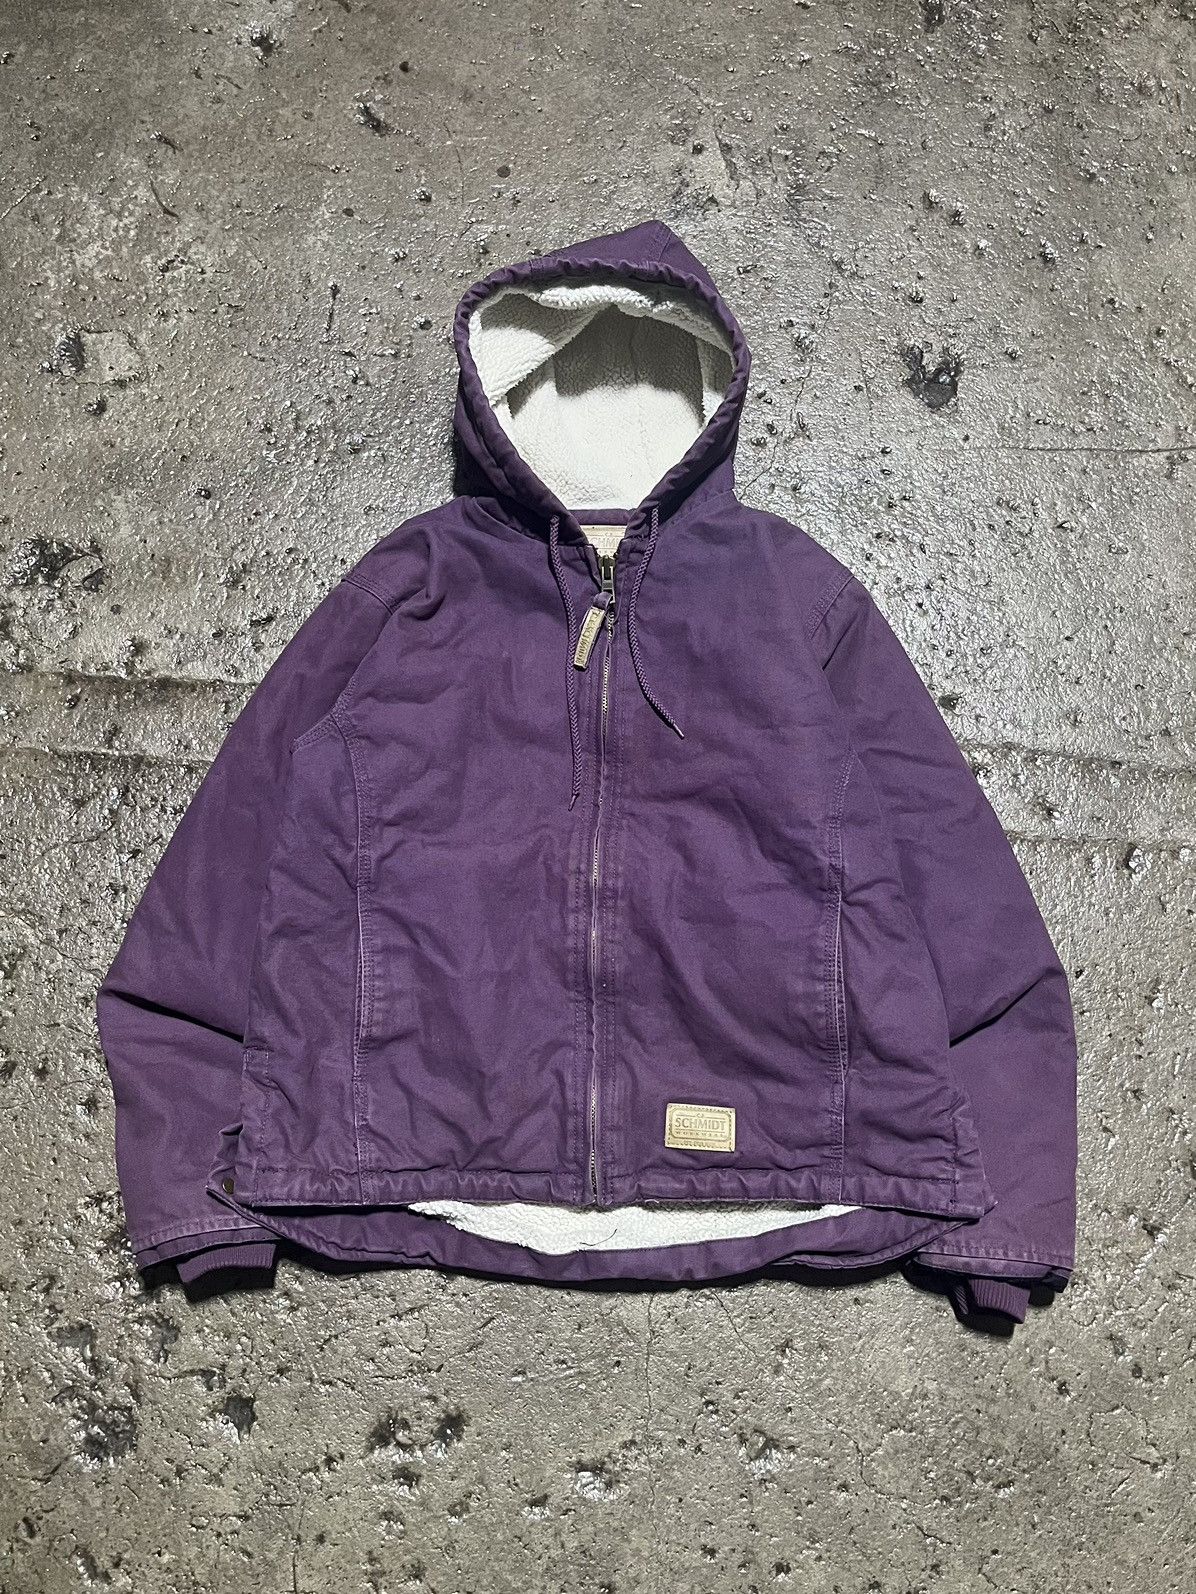 Pre-owned Carhartt X Vintage Crazy Y2k Carhartt Style Fleece Lined Purple Workwear Jacket